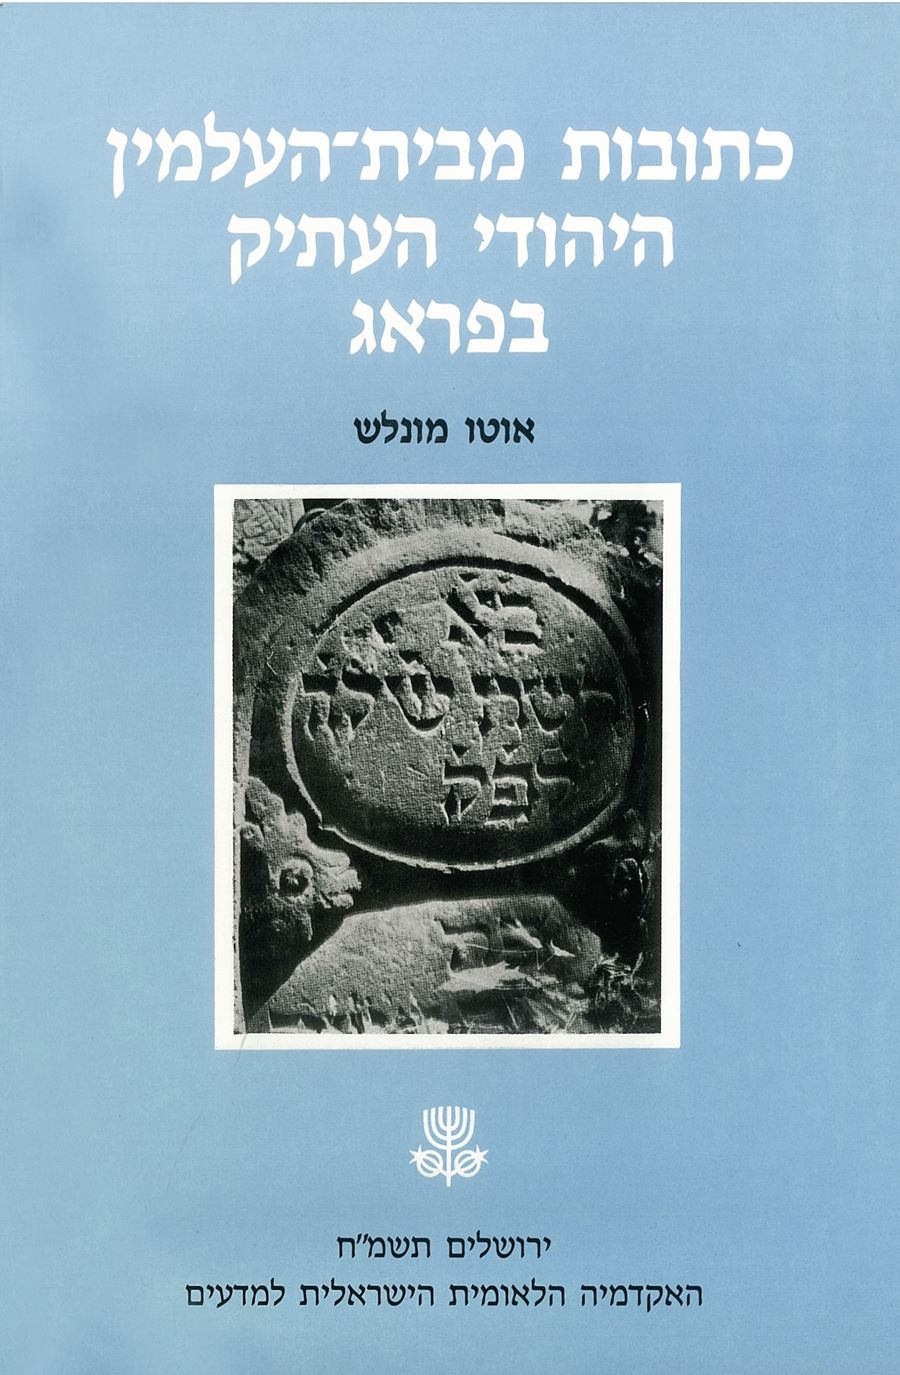 כתובות מבית־העלמין היהודי העתיק בפראג